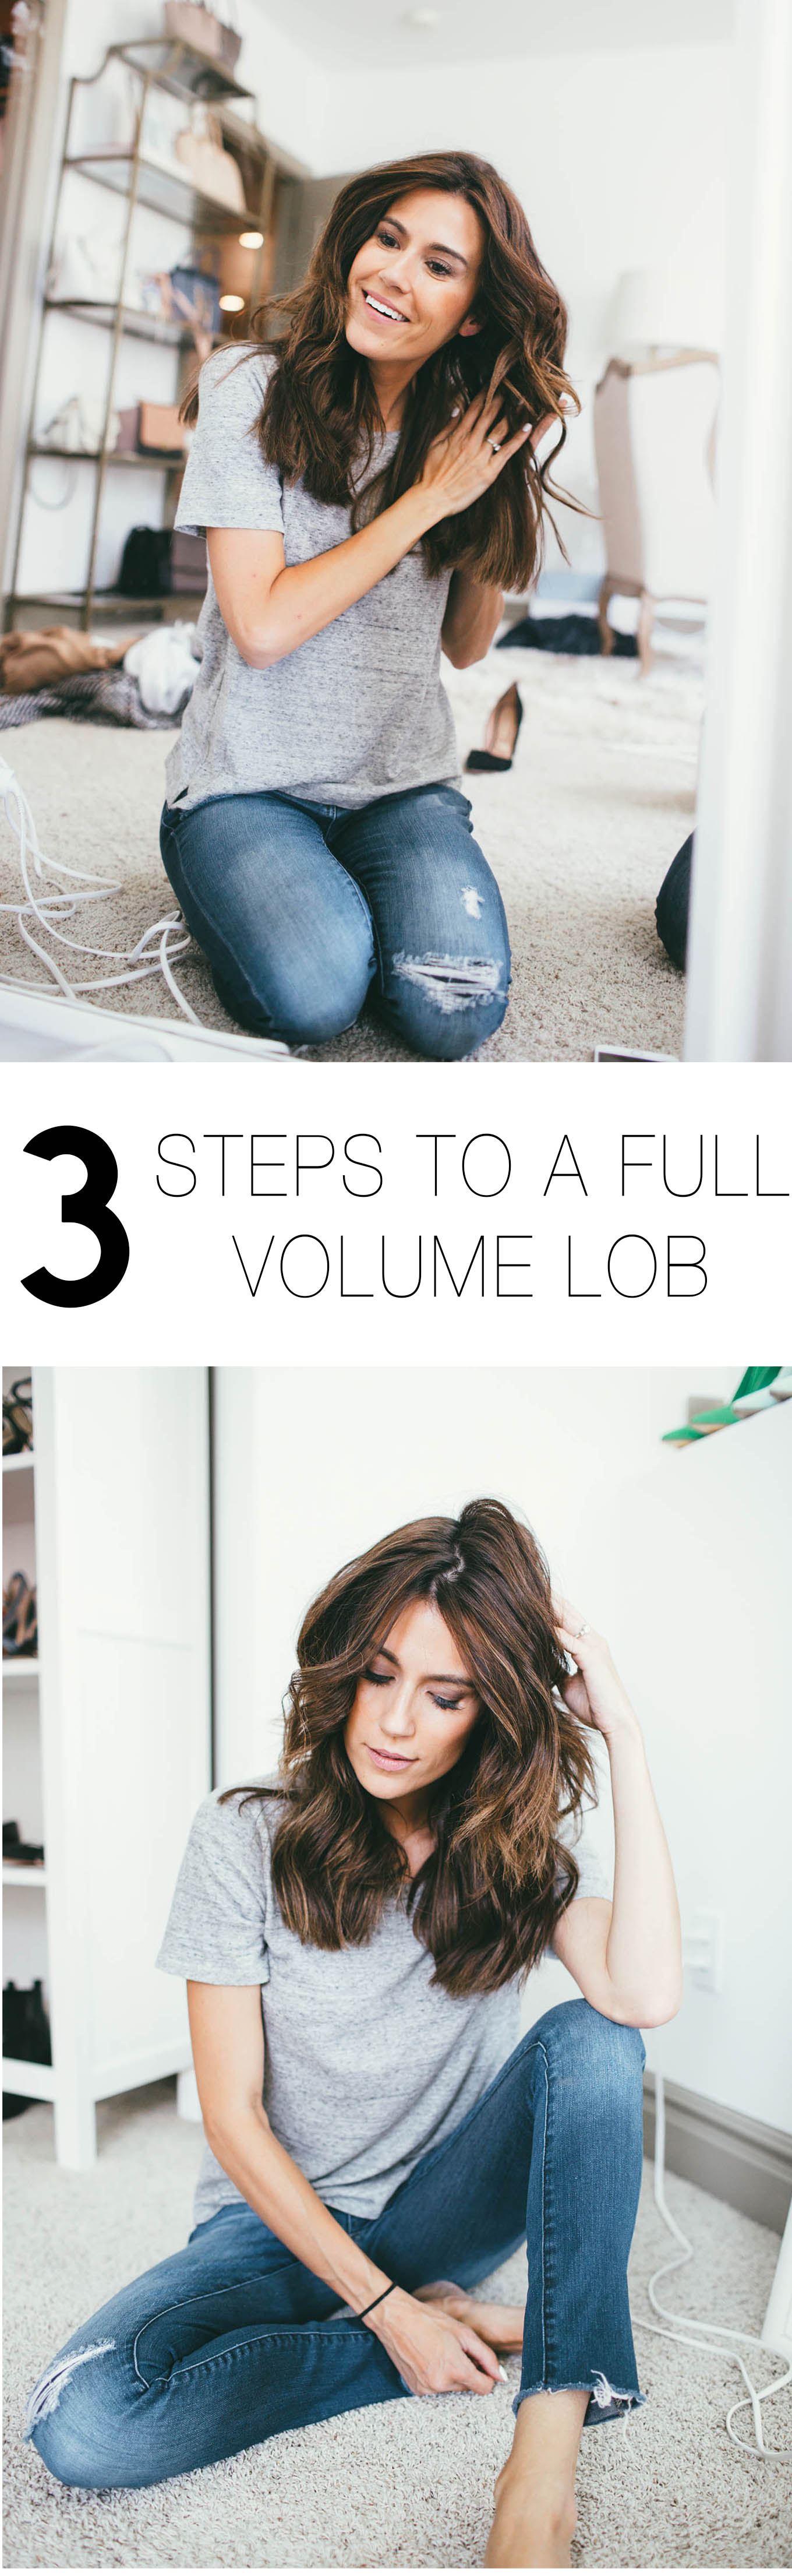 3 Steps to A Full Volume Lob | Hello Fashion